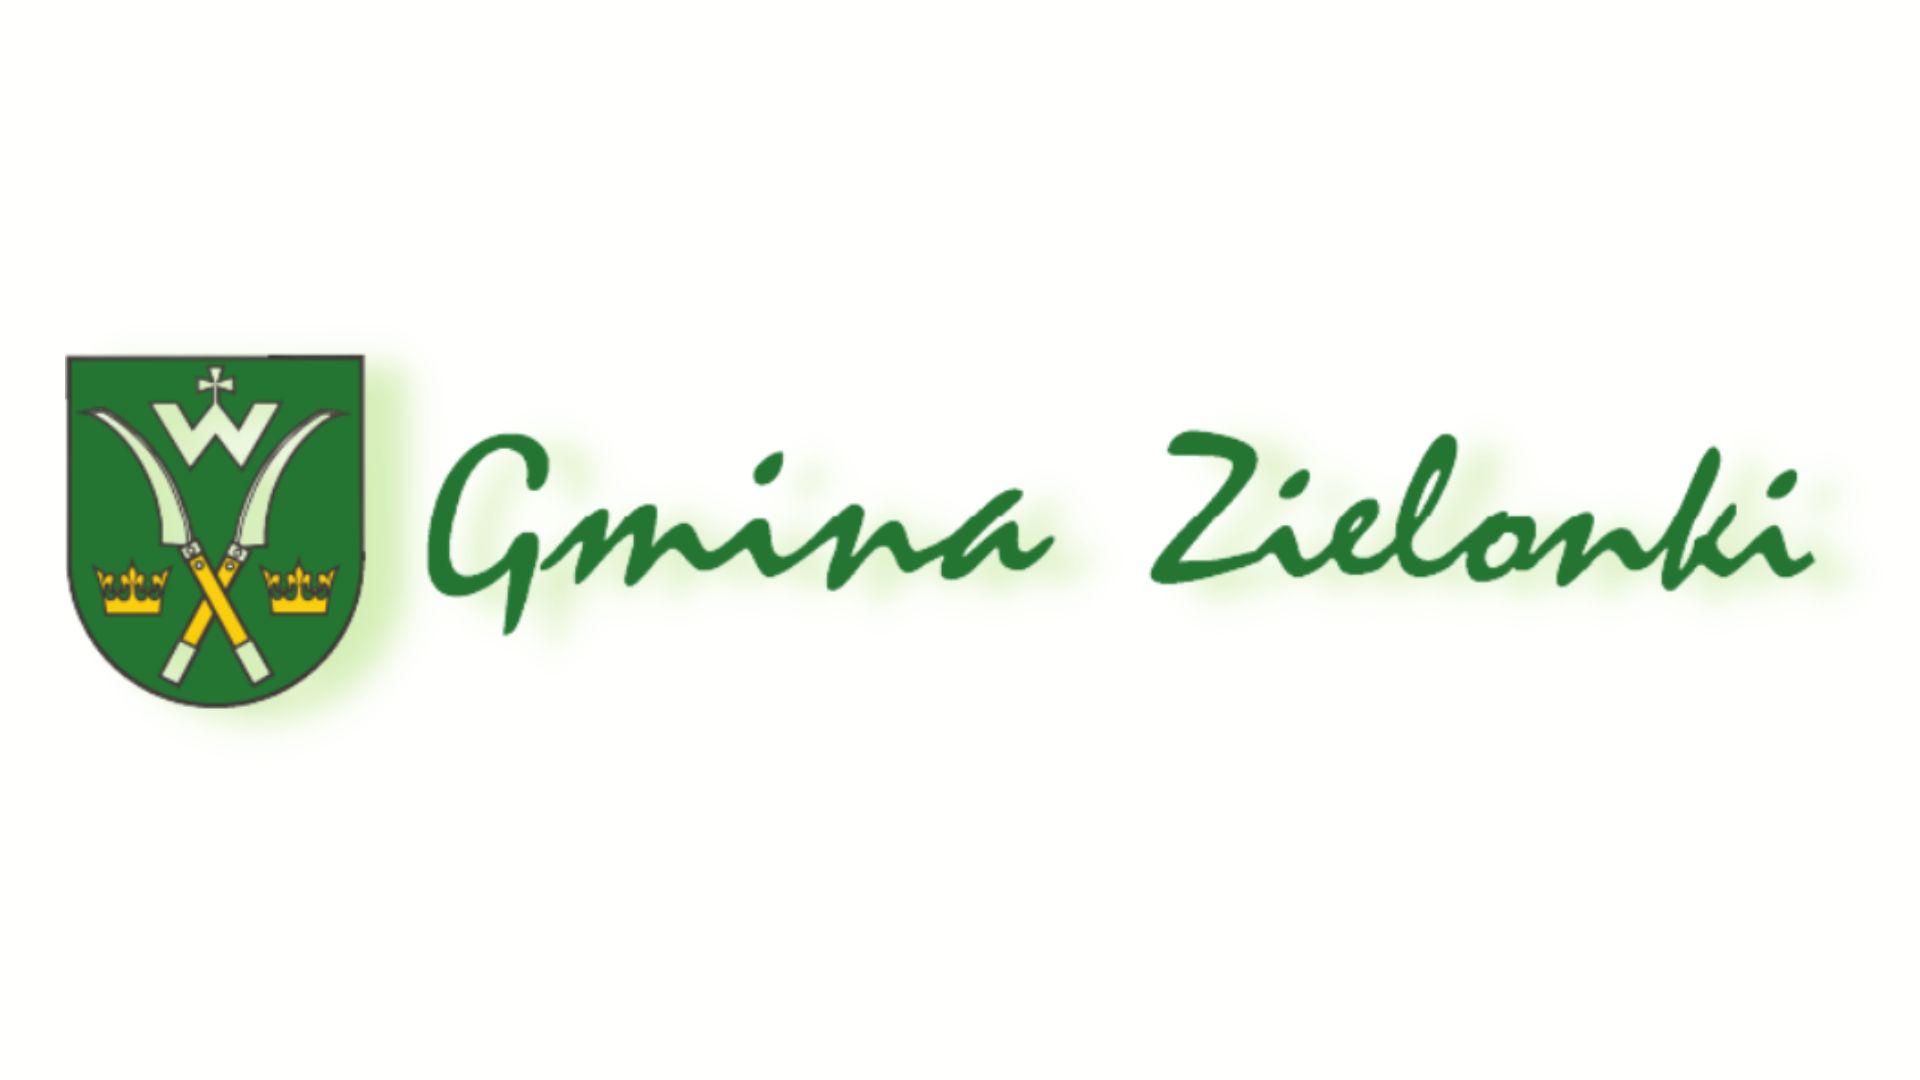 Gmina Zielonki - logo